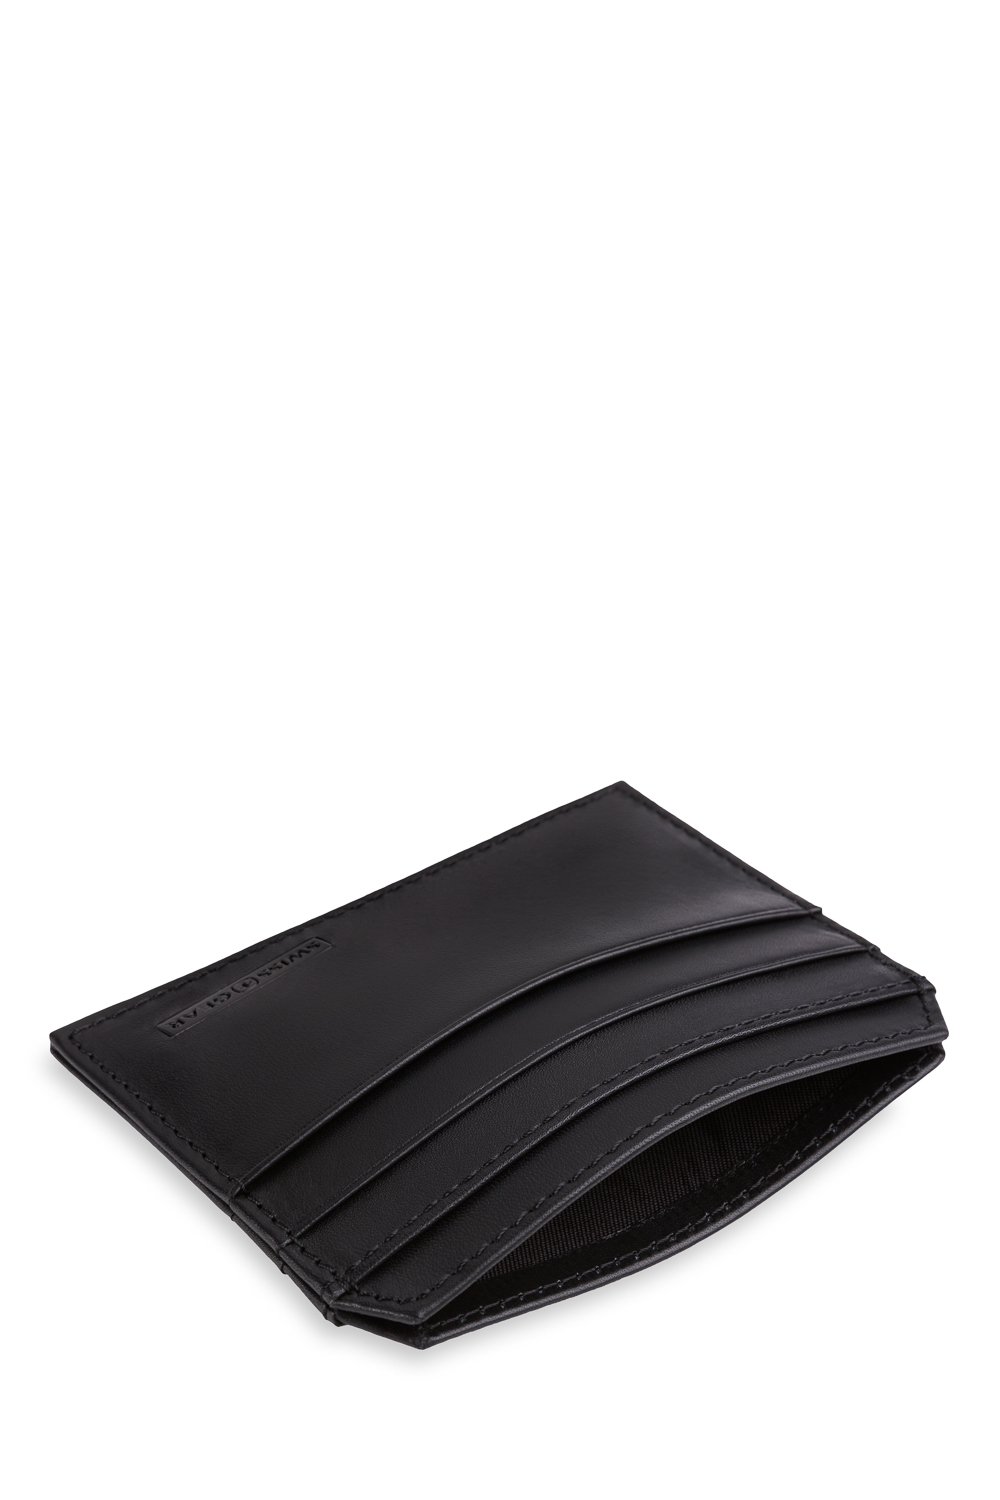 SWISSGEAR Ultra Slim Napa Leather Card Case Wallet - Black